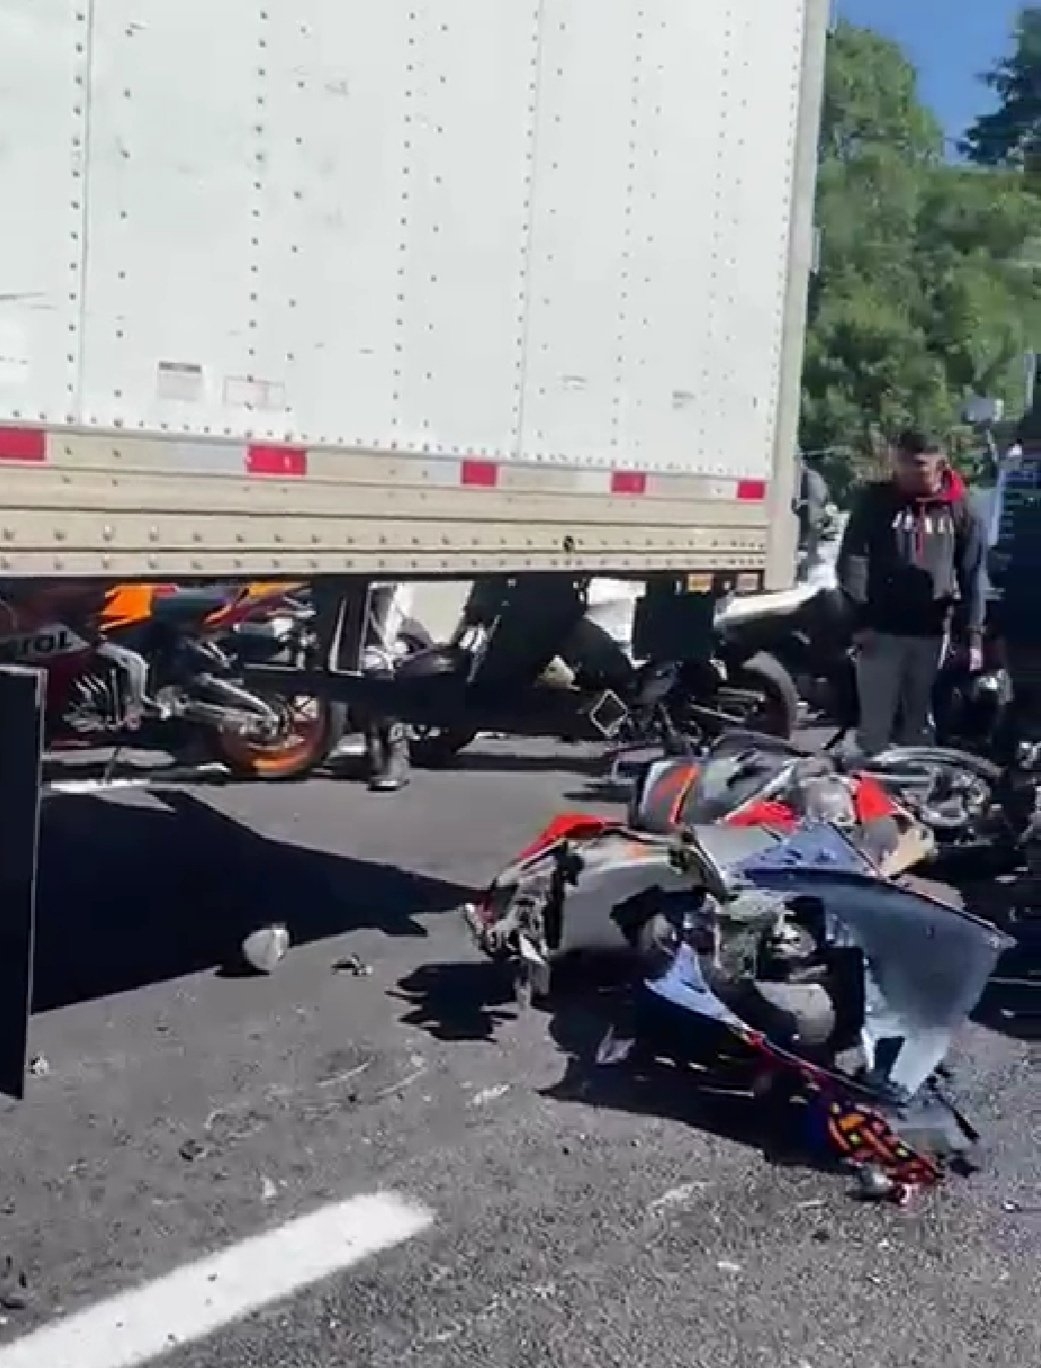 El primer accidente ocurrió en el kilómetro 51 de la autopista, donde una pareja de motociclistas se impactó contra una camioneta